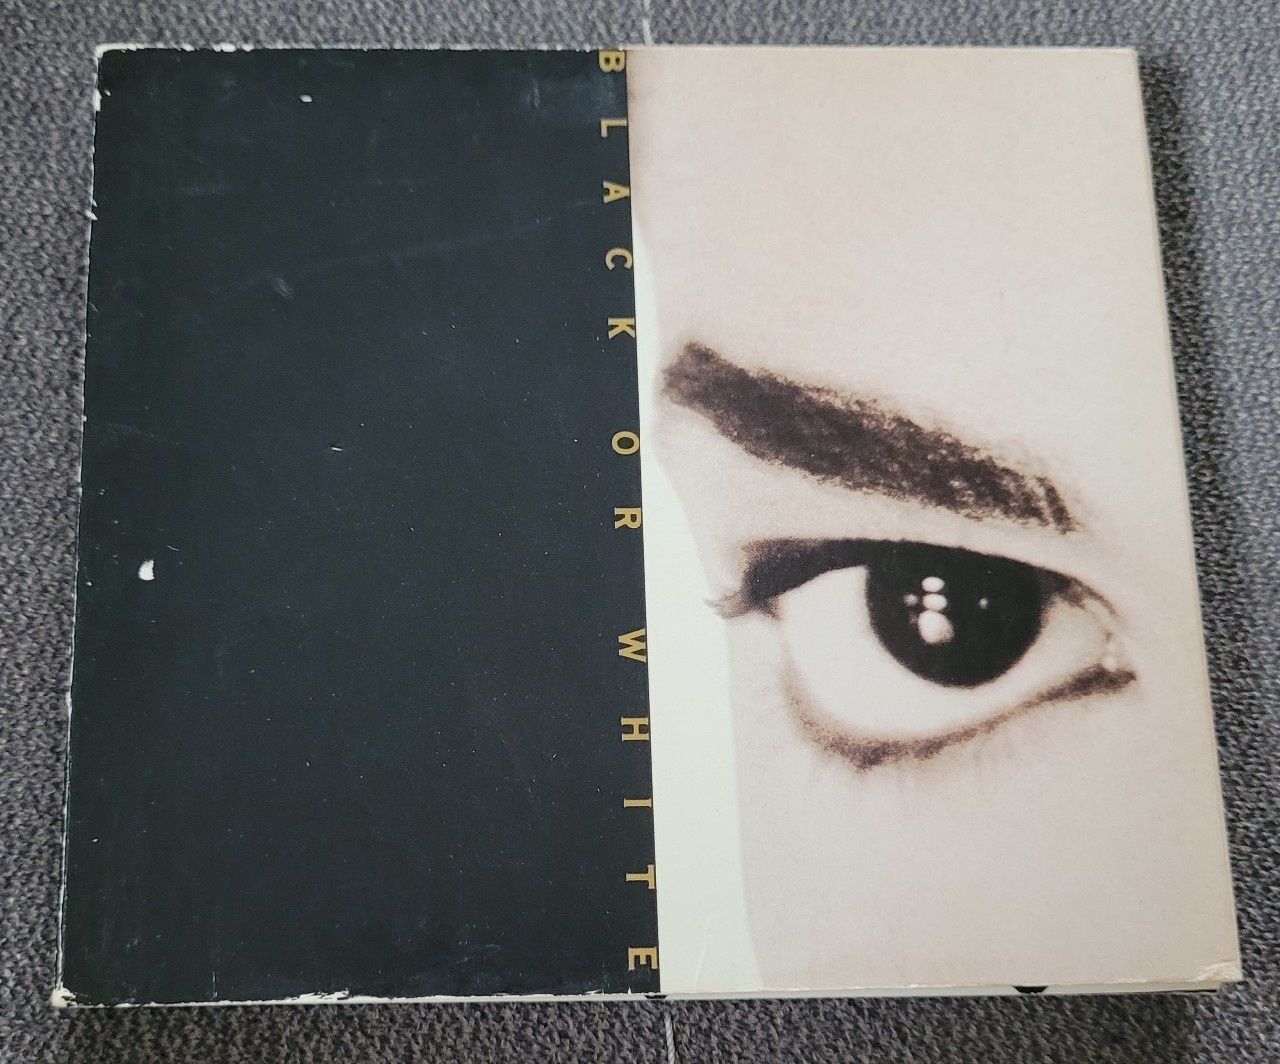 Michael Jackson Black Or White USA CD Single 3 Panel Digipack